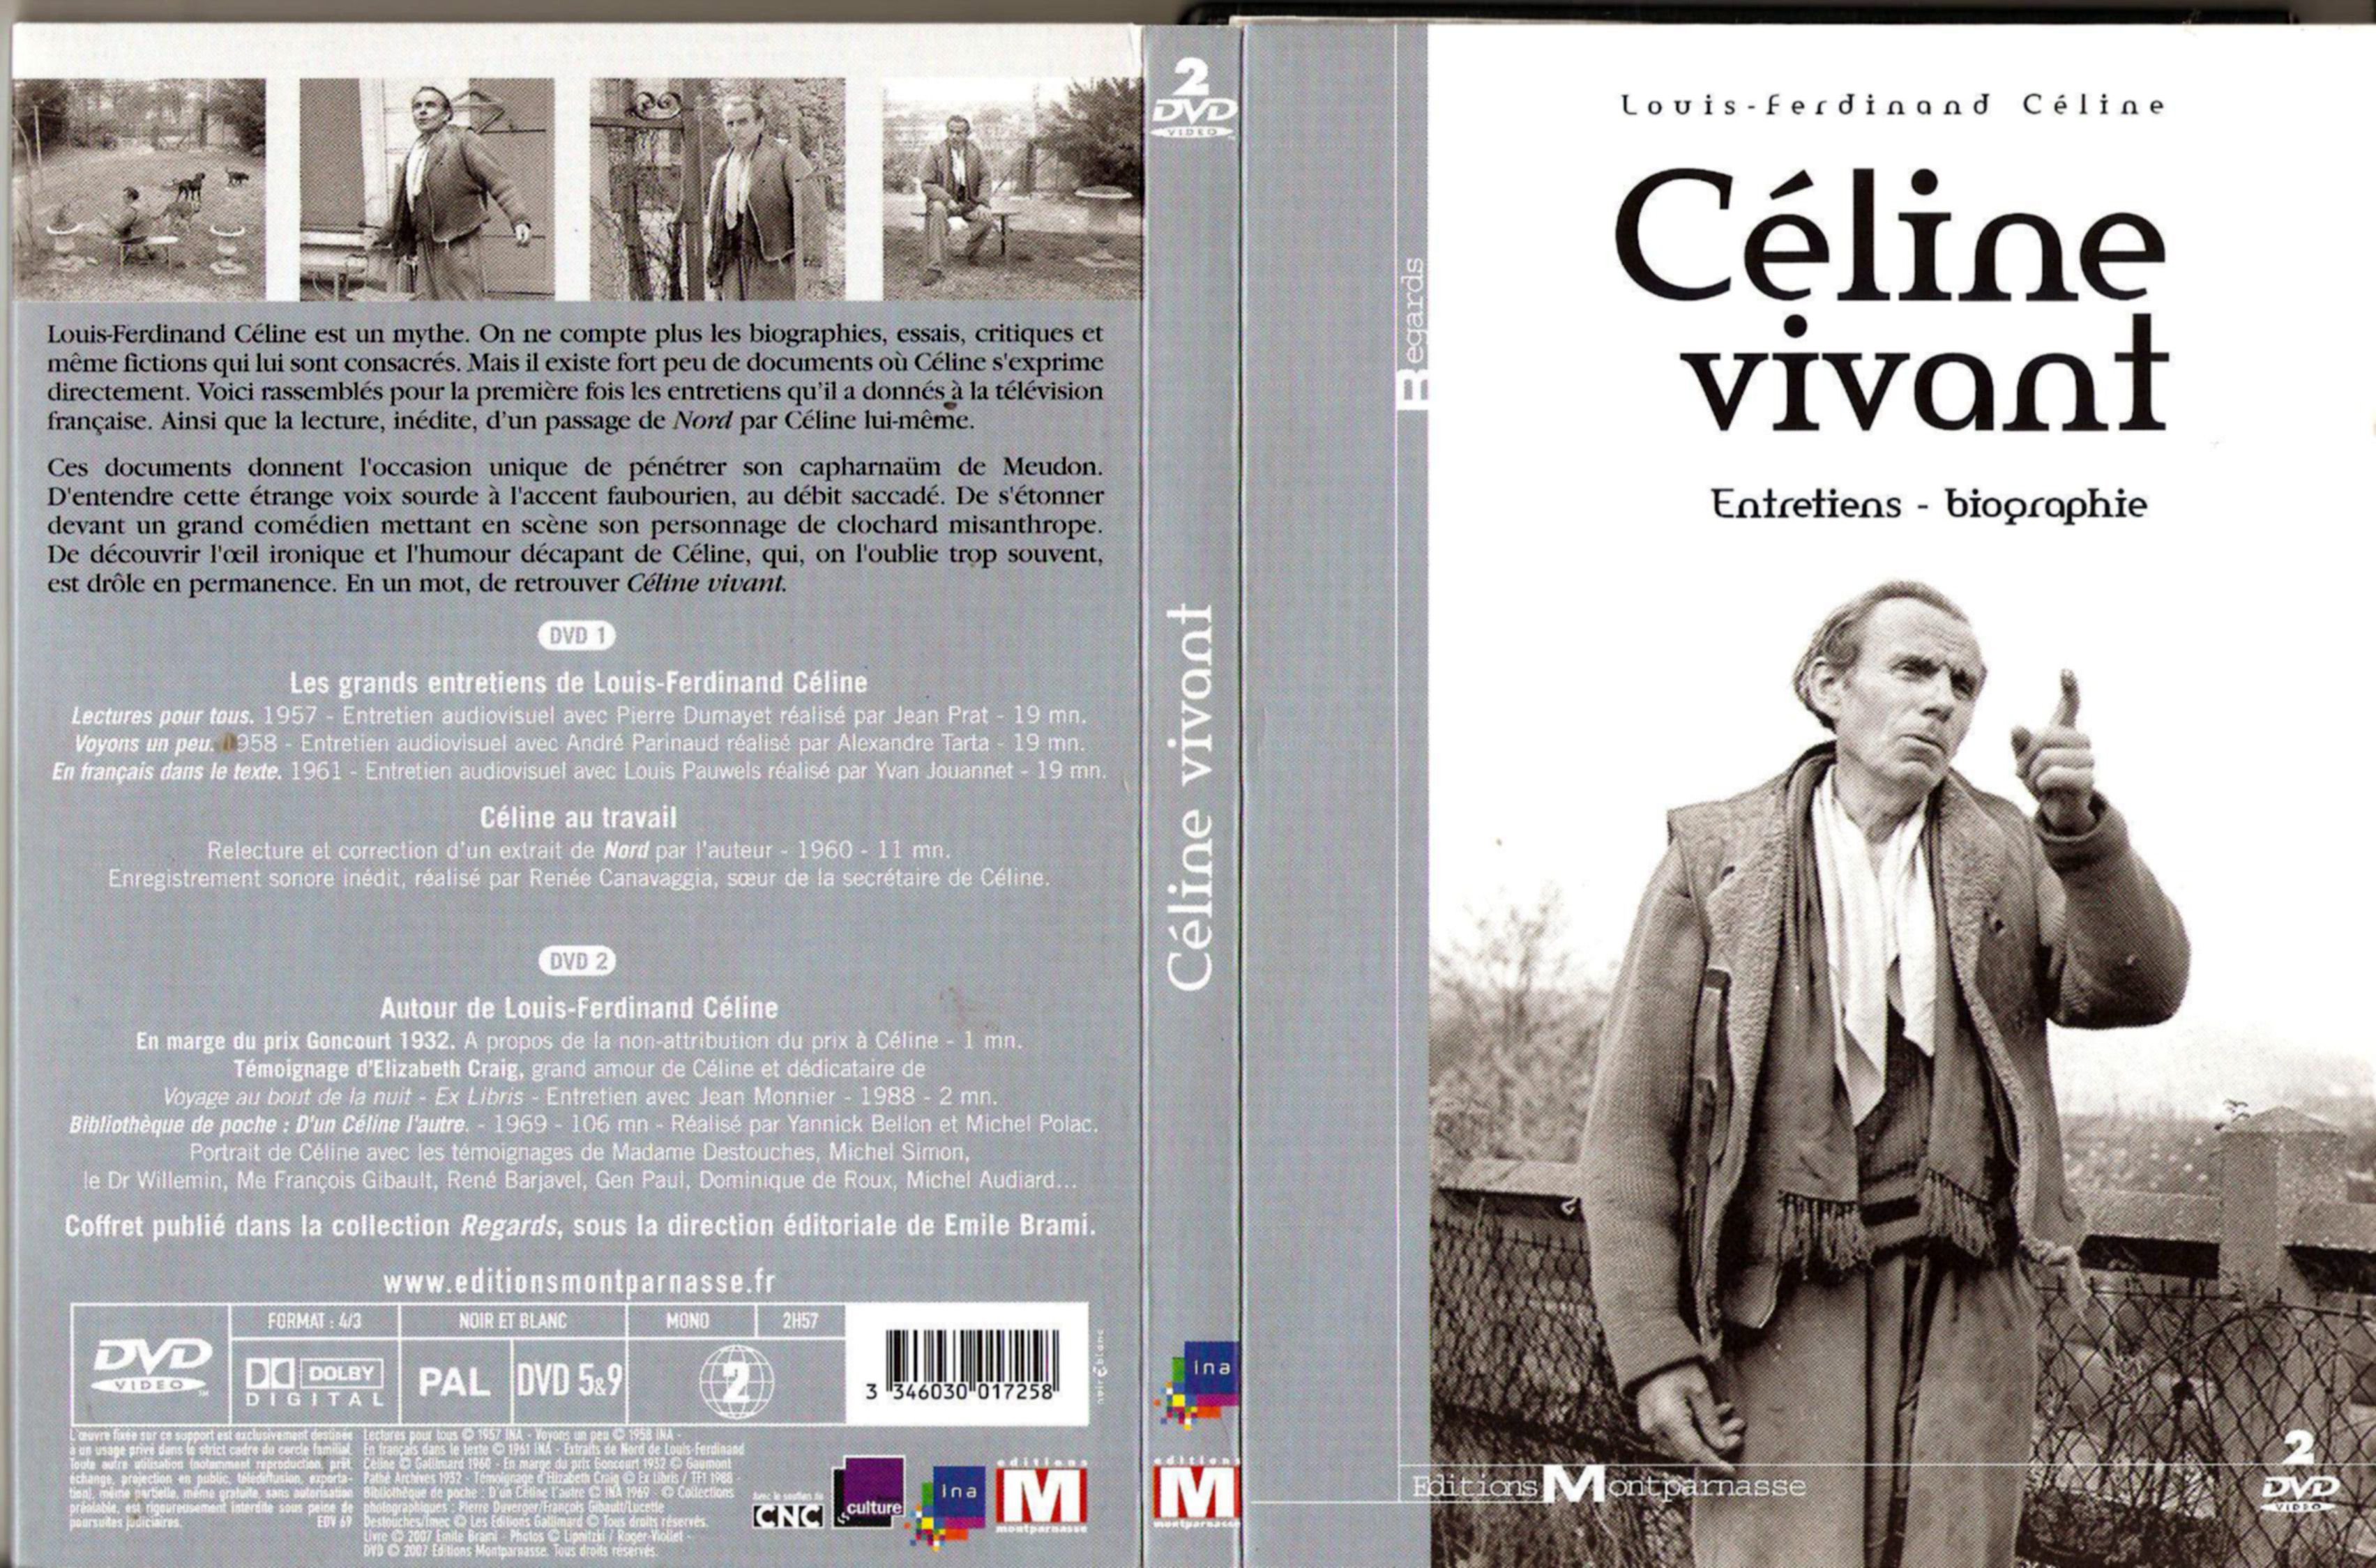 Jaquette DVD Cline vivant